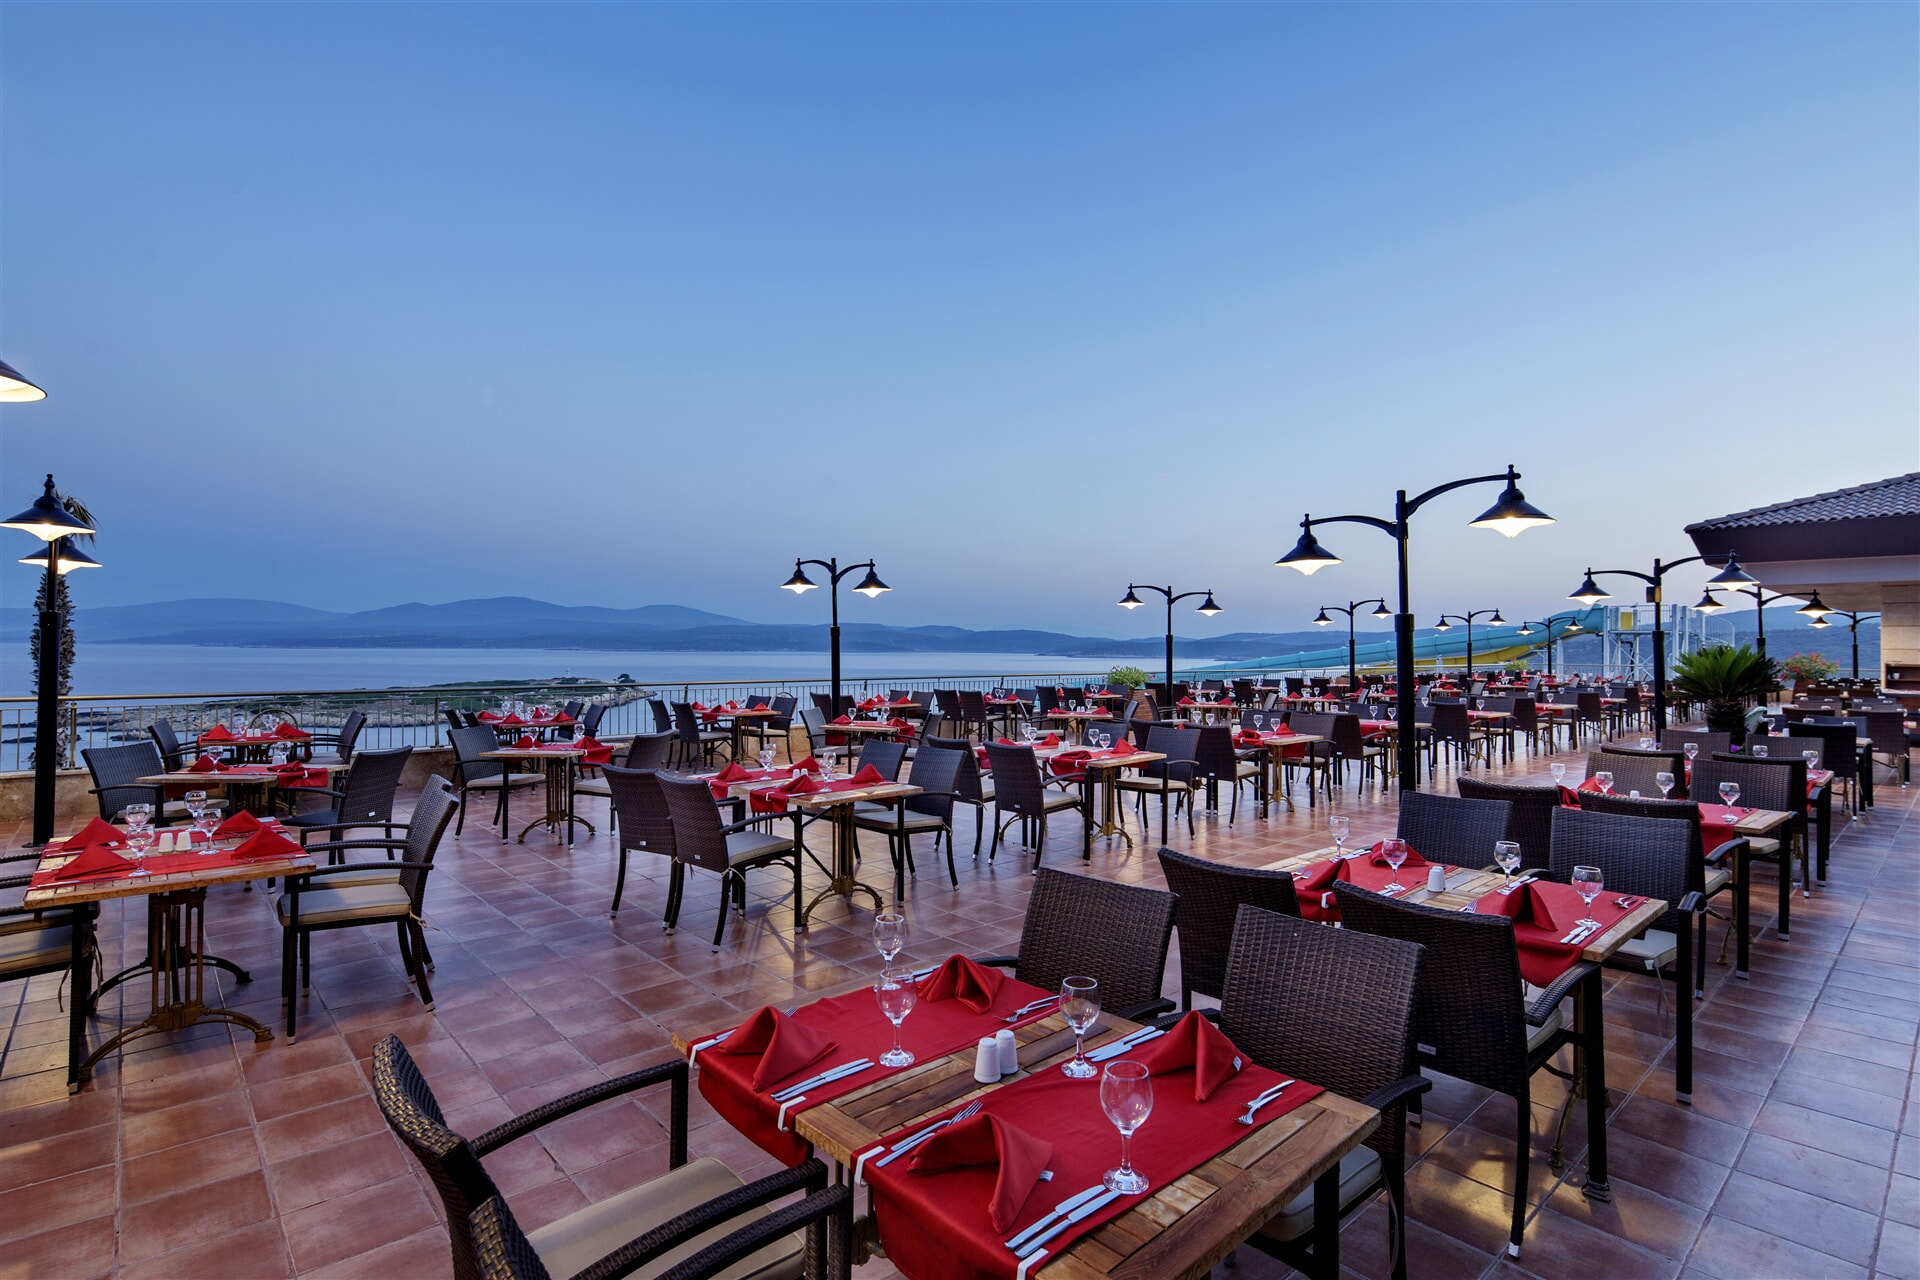 Главный ресторан предлагает различные блюда турецкой и мировой кухни в концепции шведского стола ввиде завтрака, обеда, ужина и ночного ужина.